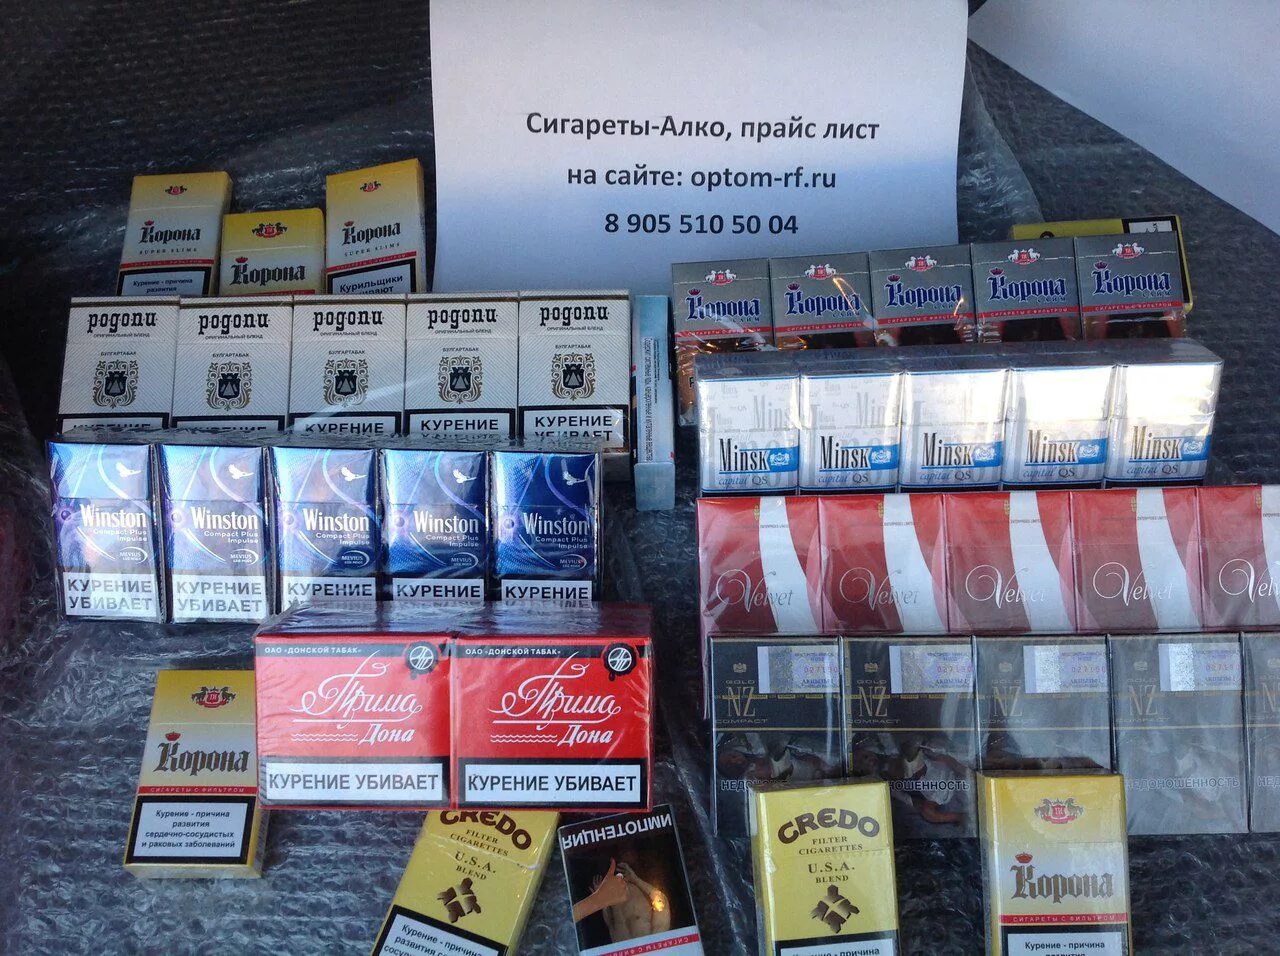 Купить сигареты в беларуси. Сигареты ассортимент. Недорогие сигареты. Недорогие Белорусские сигареты. Белорусские сигареты компакт.